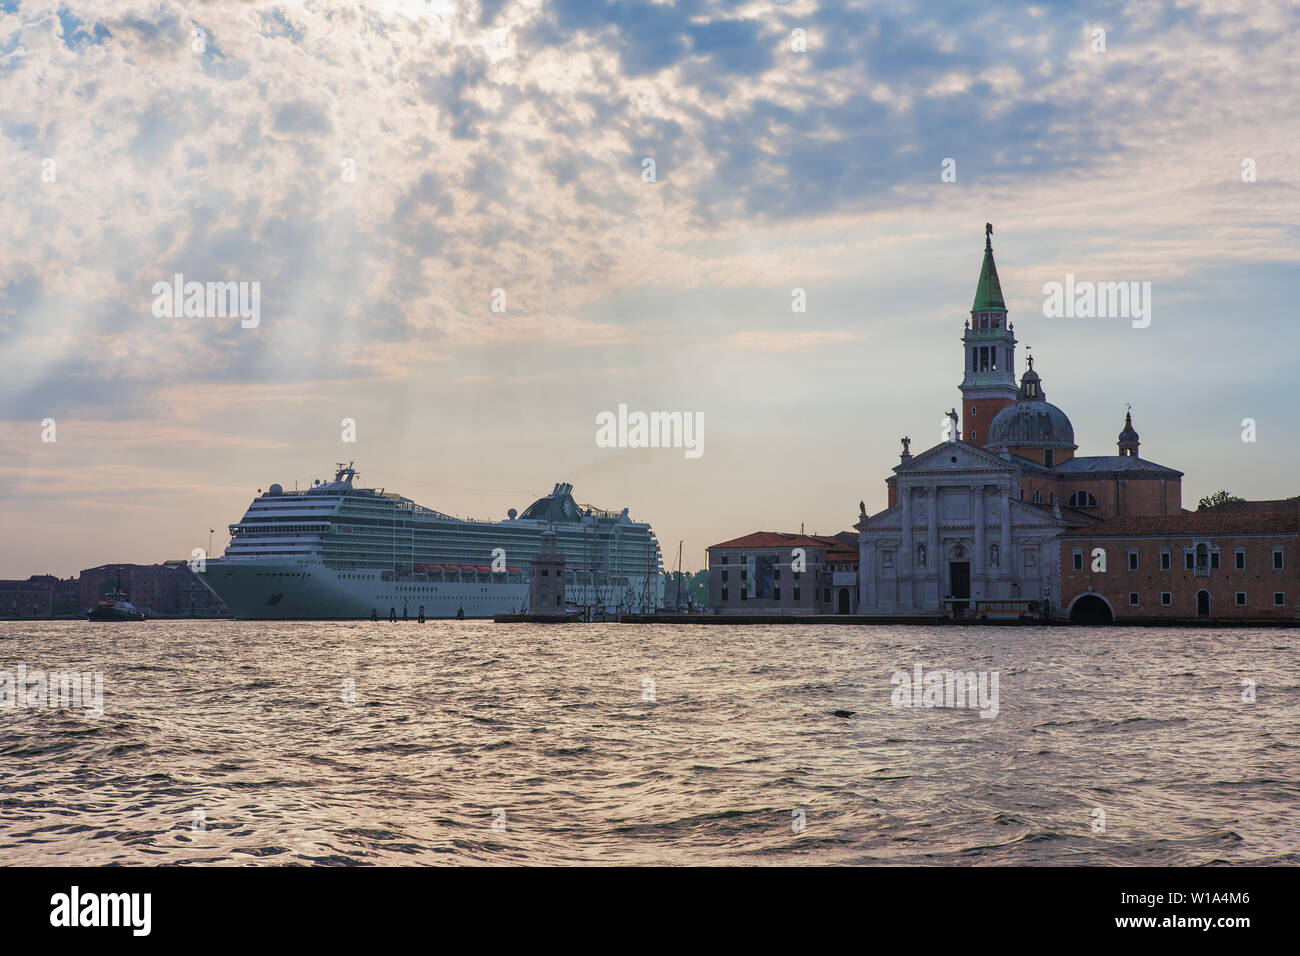 A huge cruise liner in the Canale di San Marco dwarfs the Chiesa di San Giorgio Maggiore, Venice, Italy Stock Photo